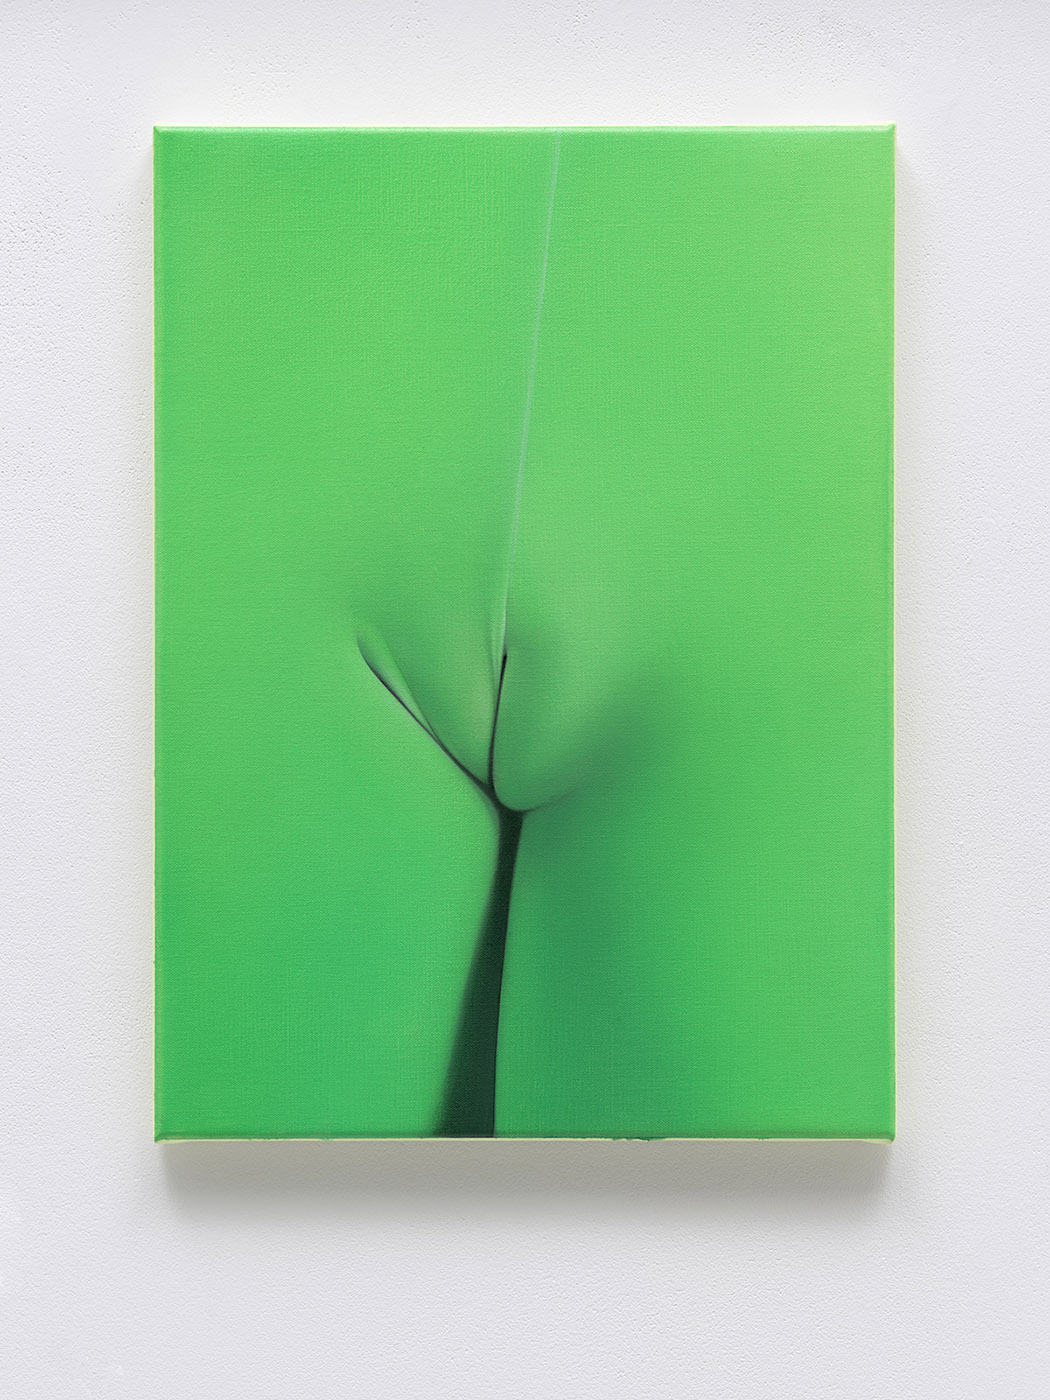 Vivian Greven, X II, 2021, oil on canvas, 48 x 35 cm, 18 7/8 x 13 3/4 in.